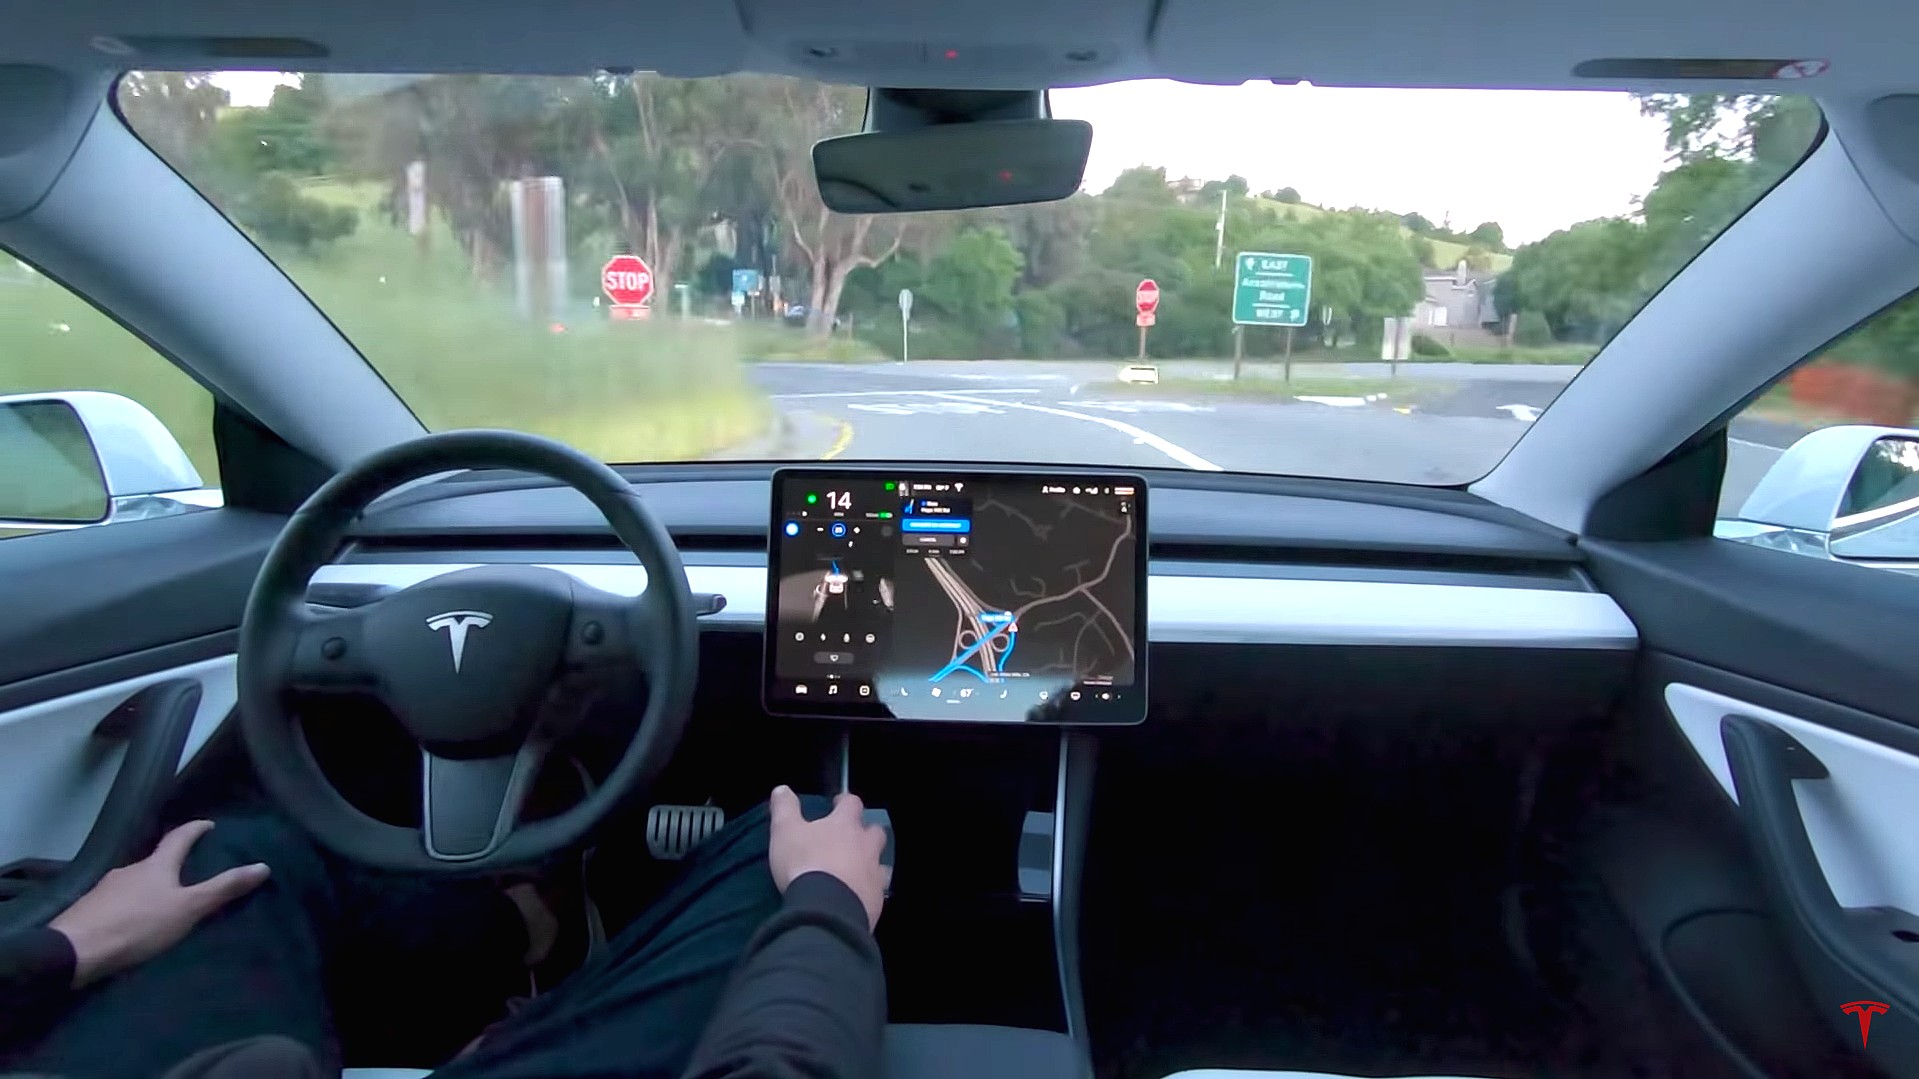 A assinatura Tesla Full Self-Driving já está disponível, mas causa alguns transtornos para os usuários